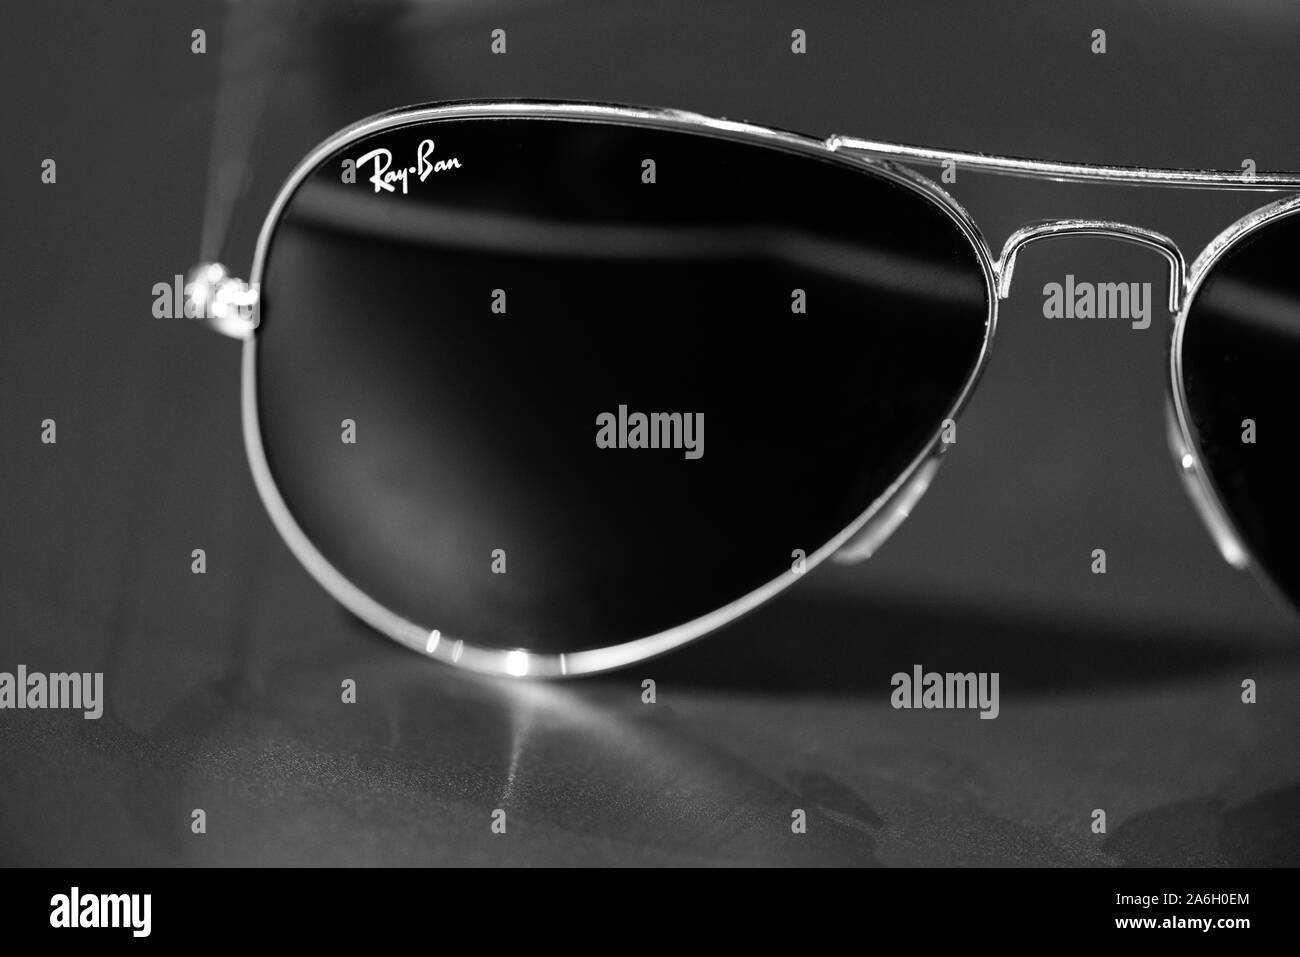 Ray ban aviator immagini e fotografie stock ad alta risoluzione - Alamy